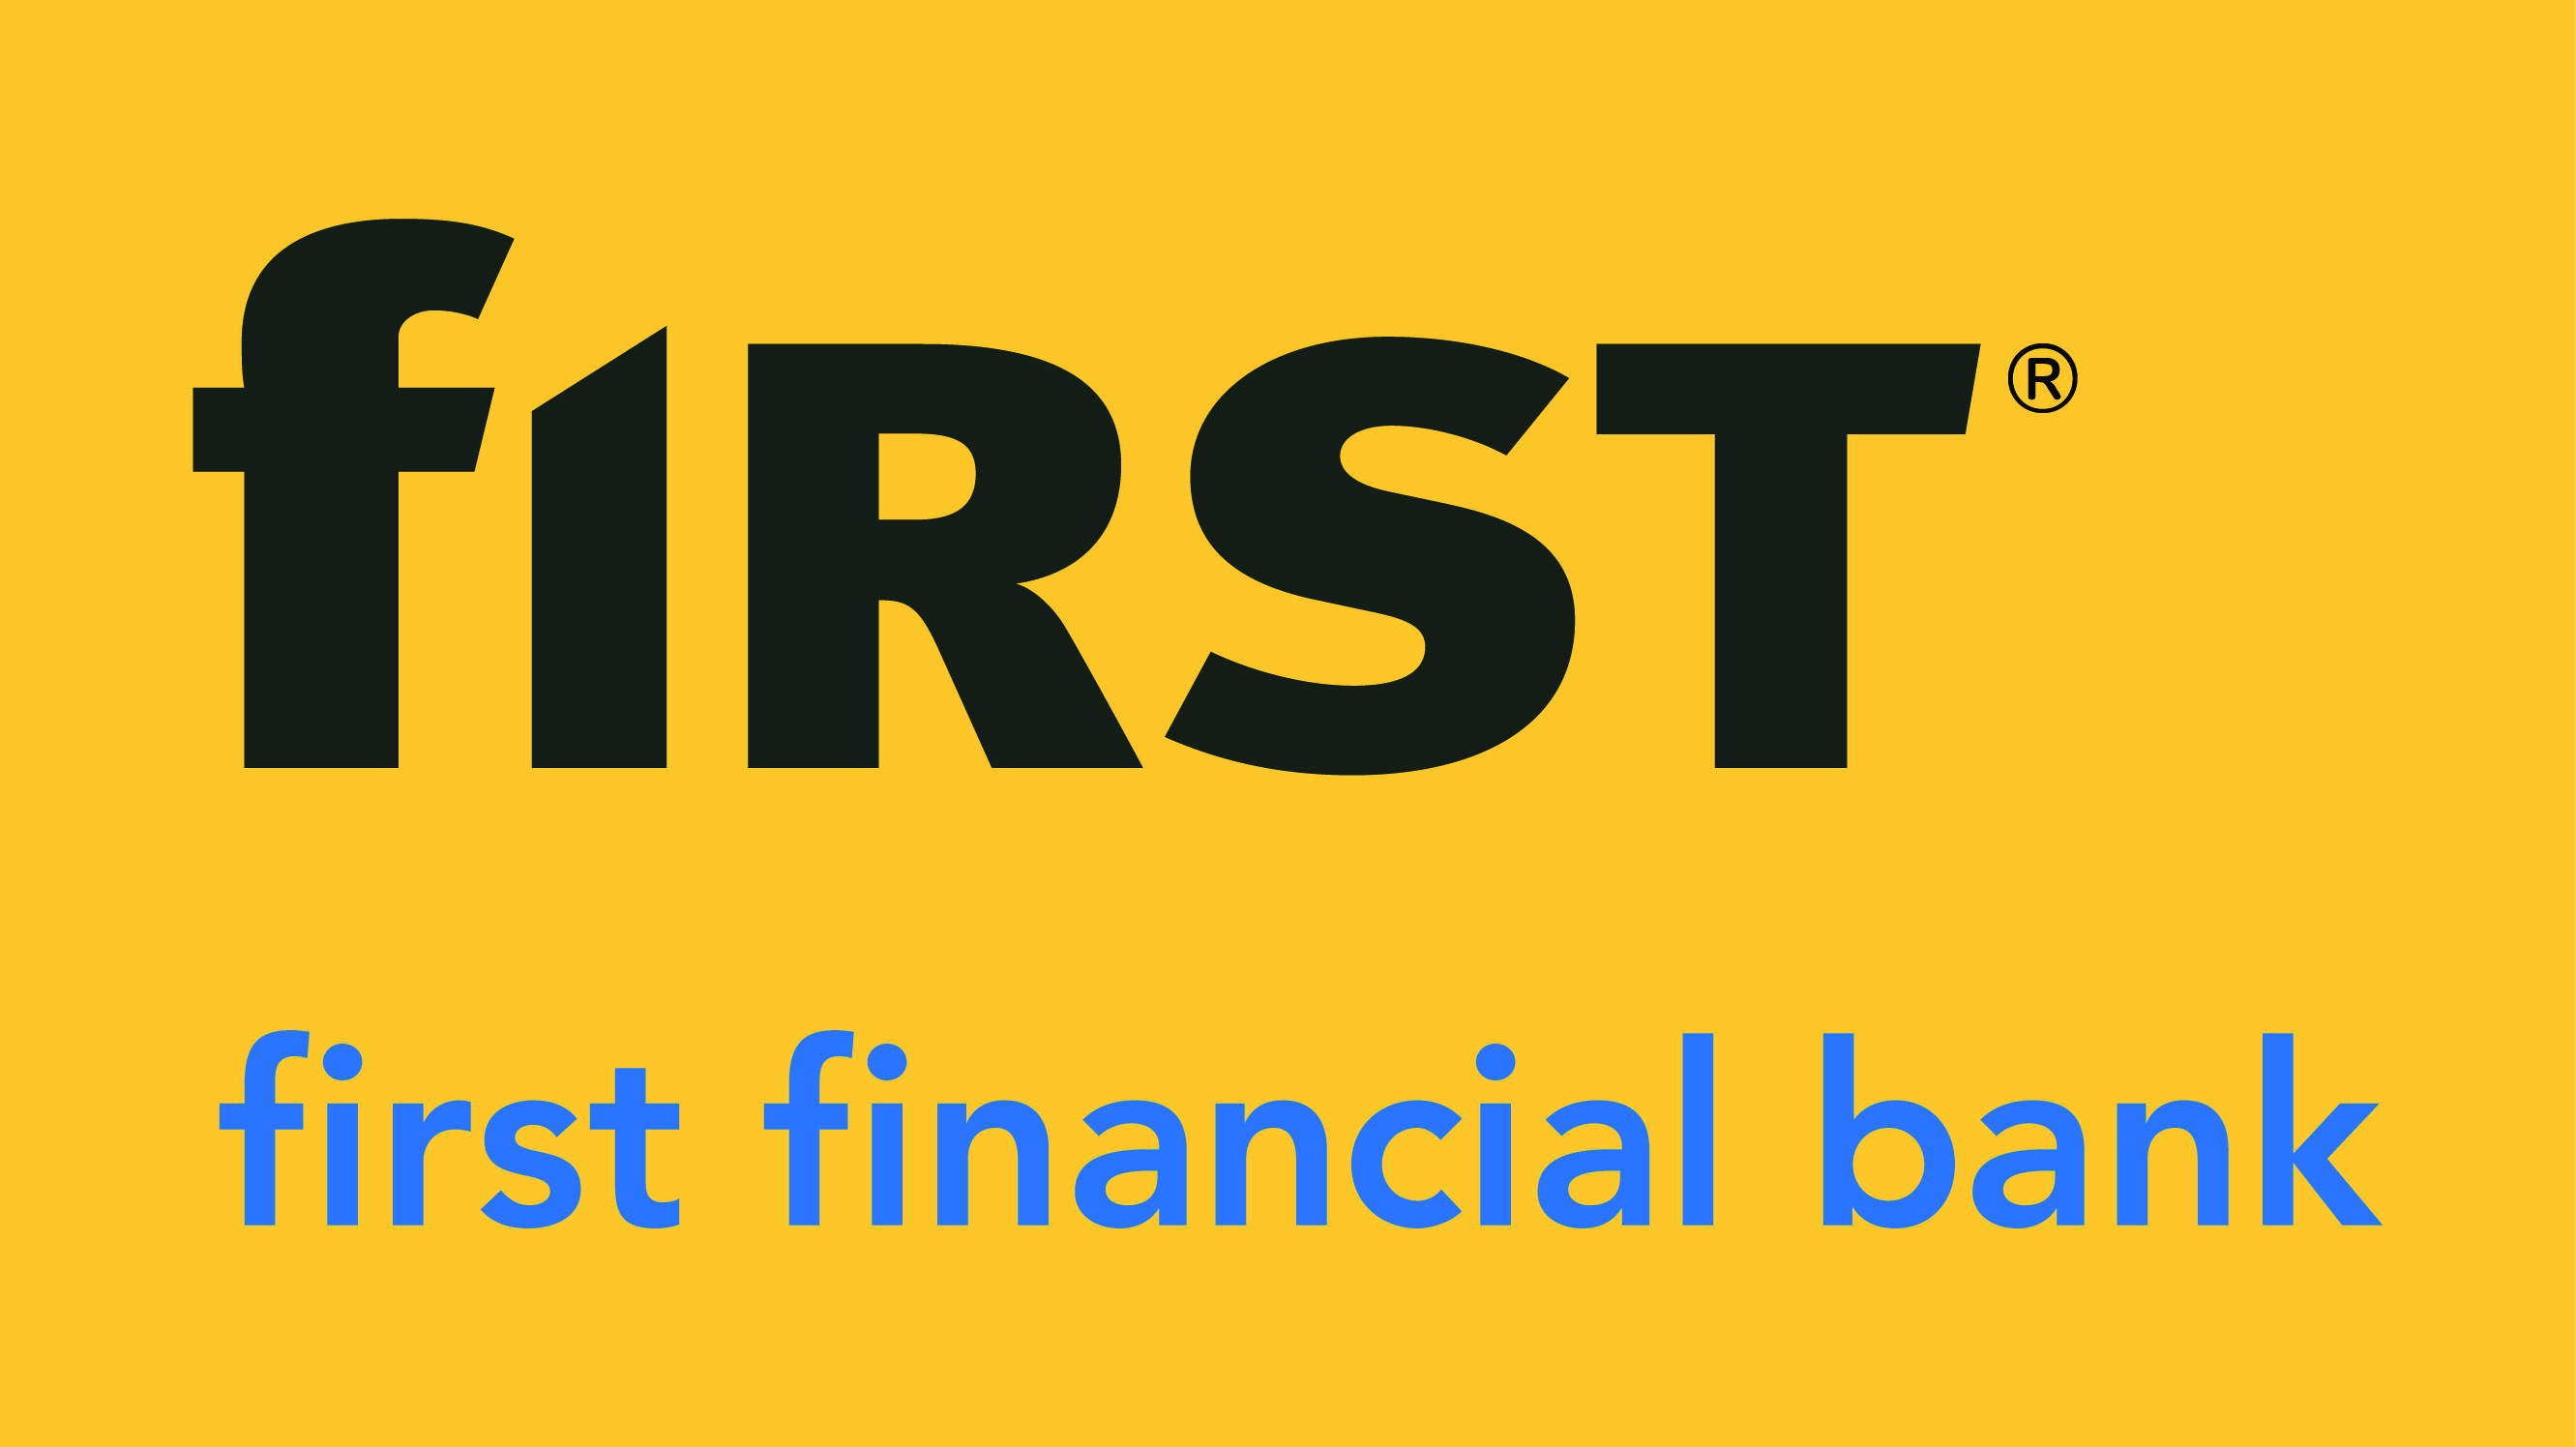 First_financial_bank_logo.jpg